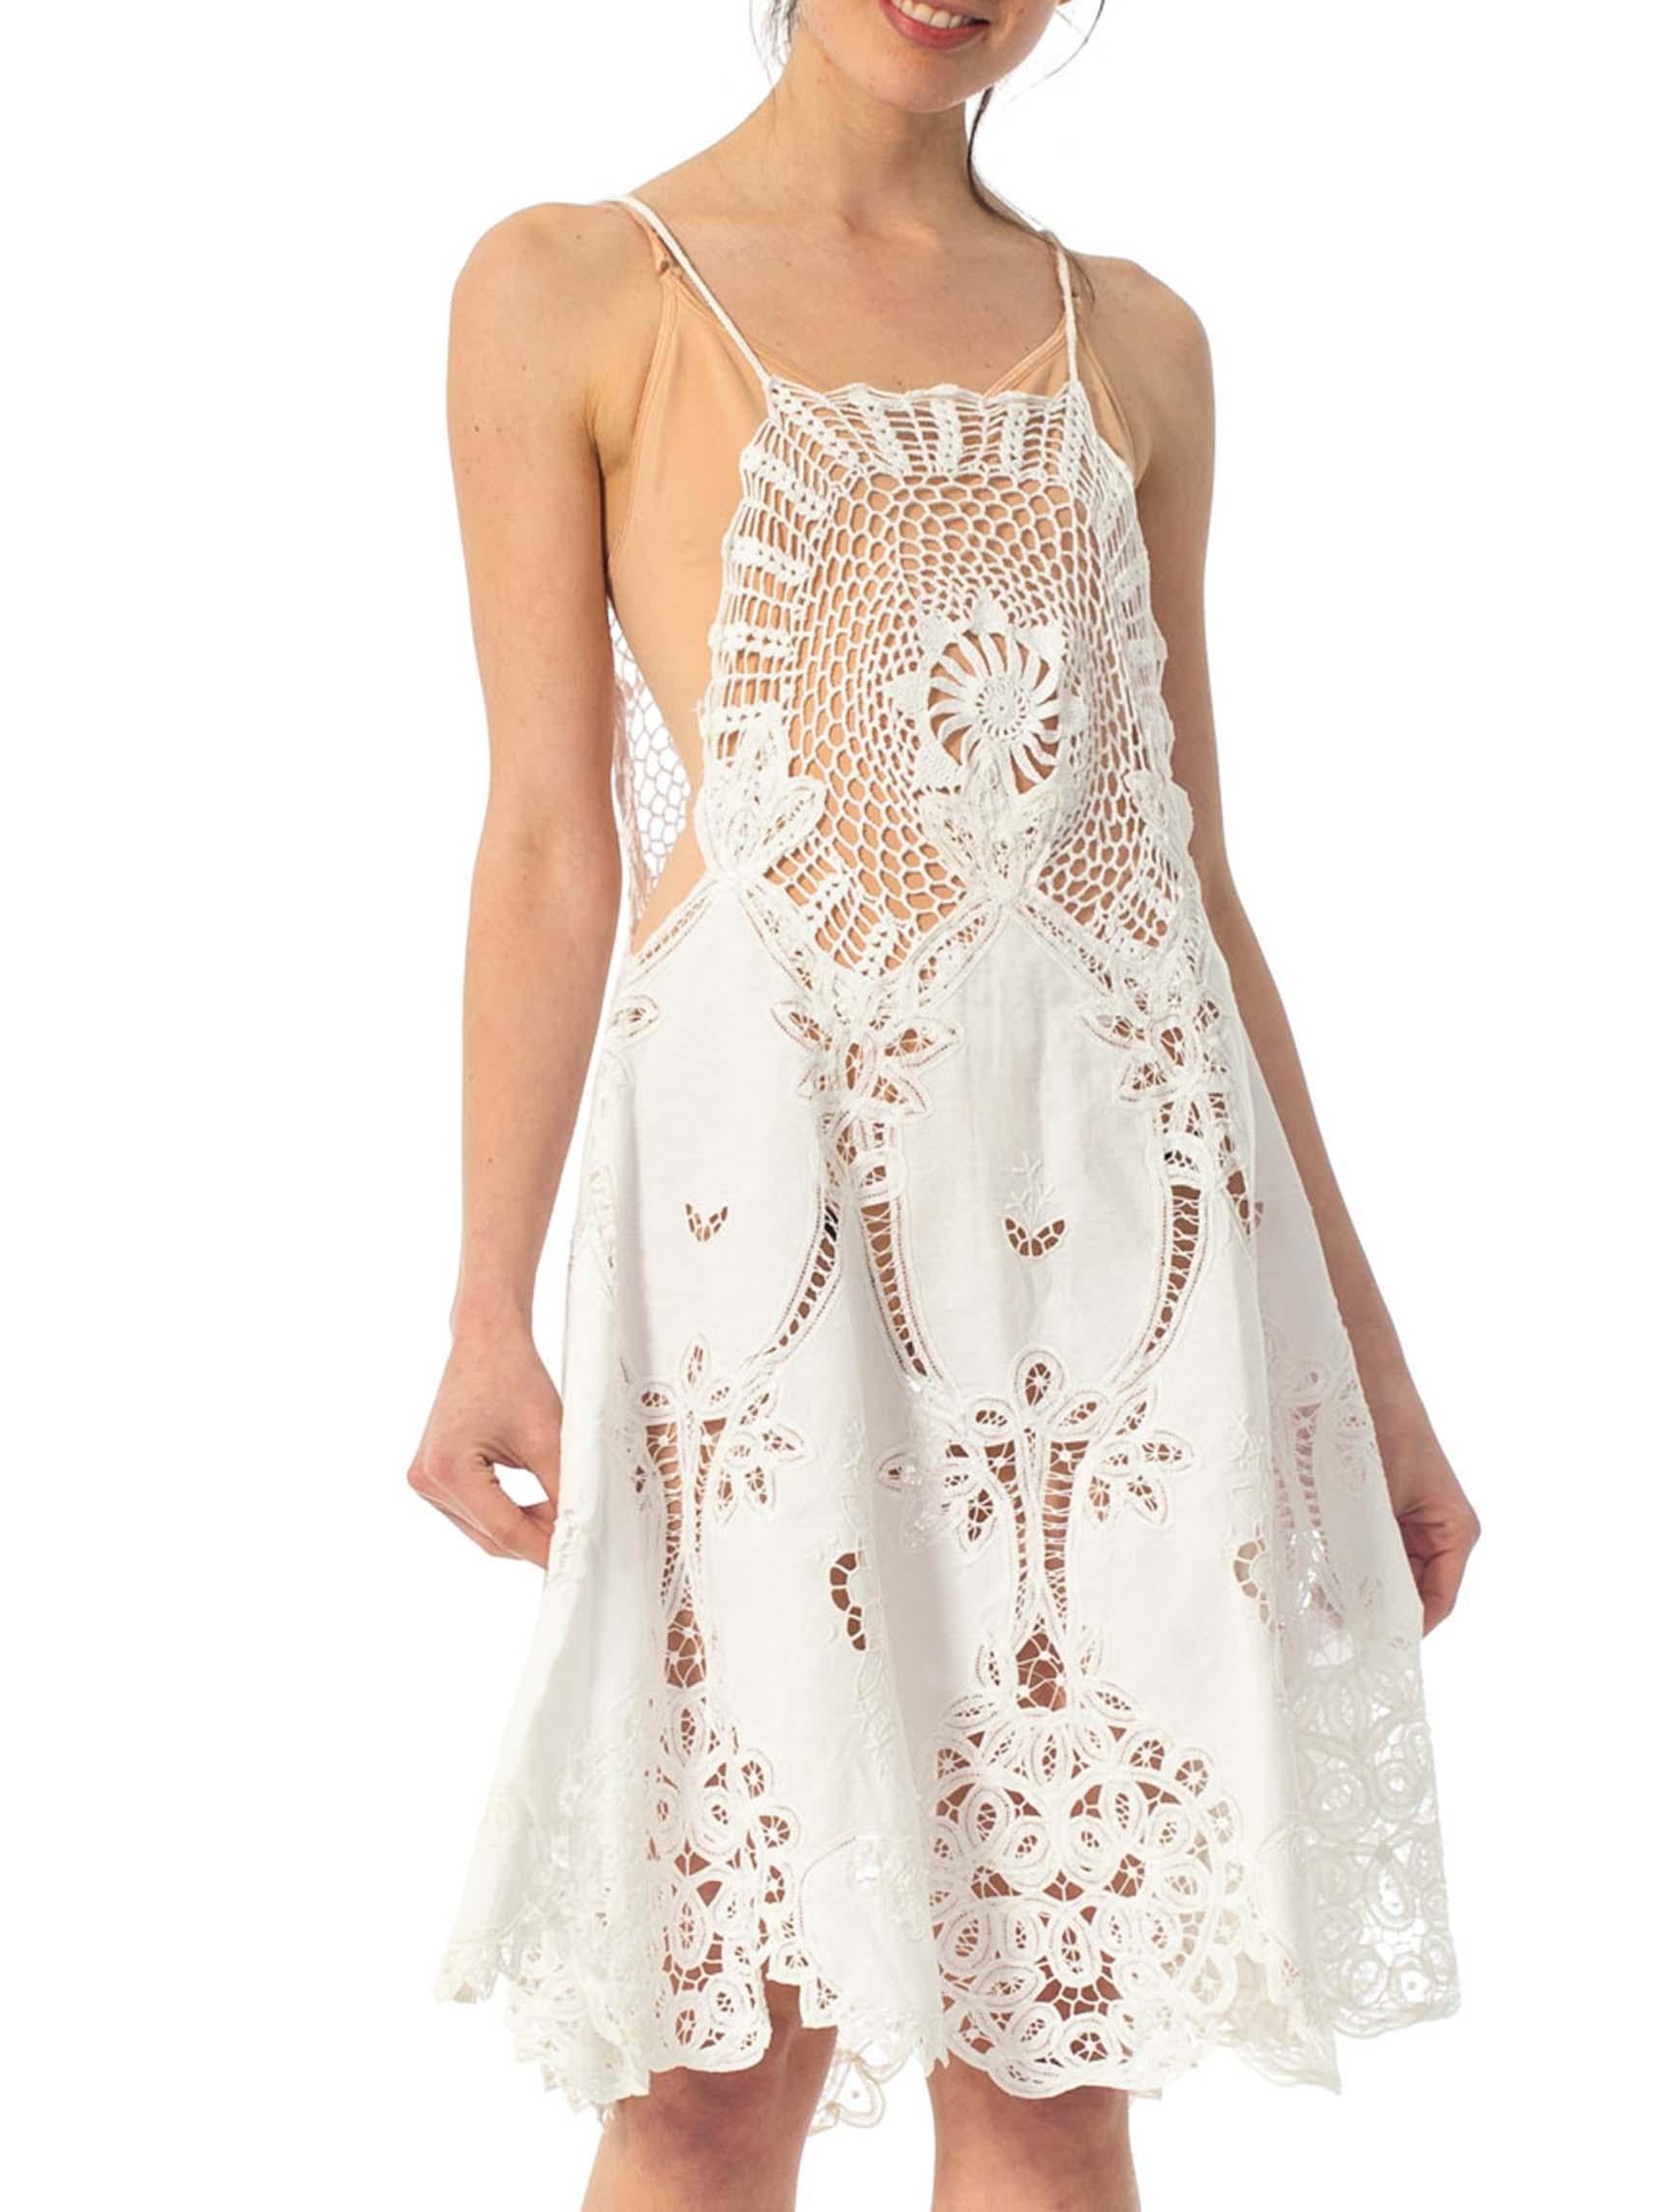 1970S White Cotton Lace Crochet Top Dress 1